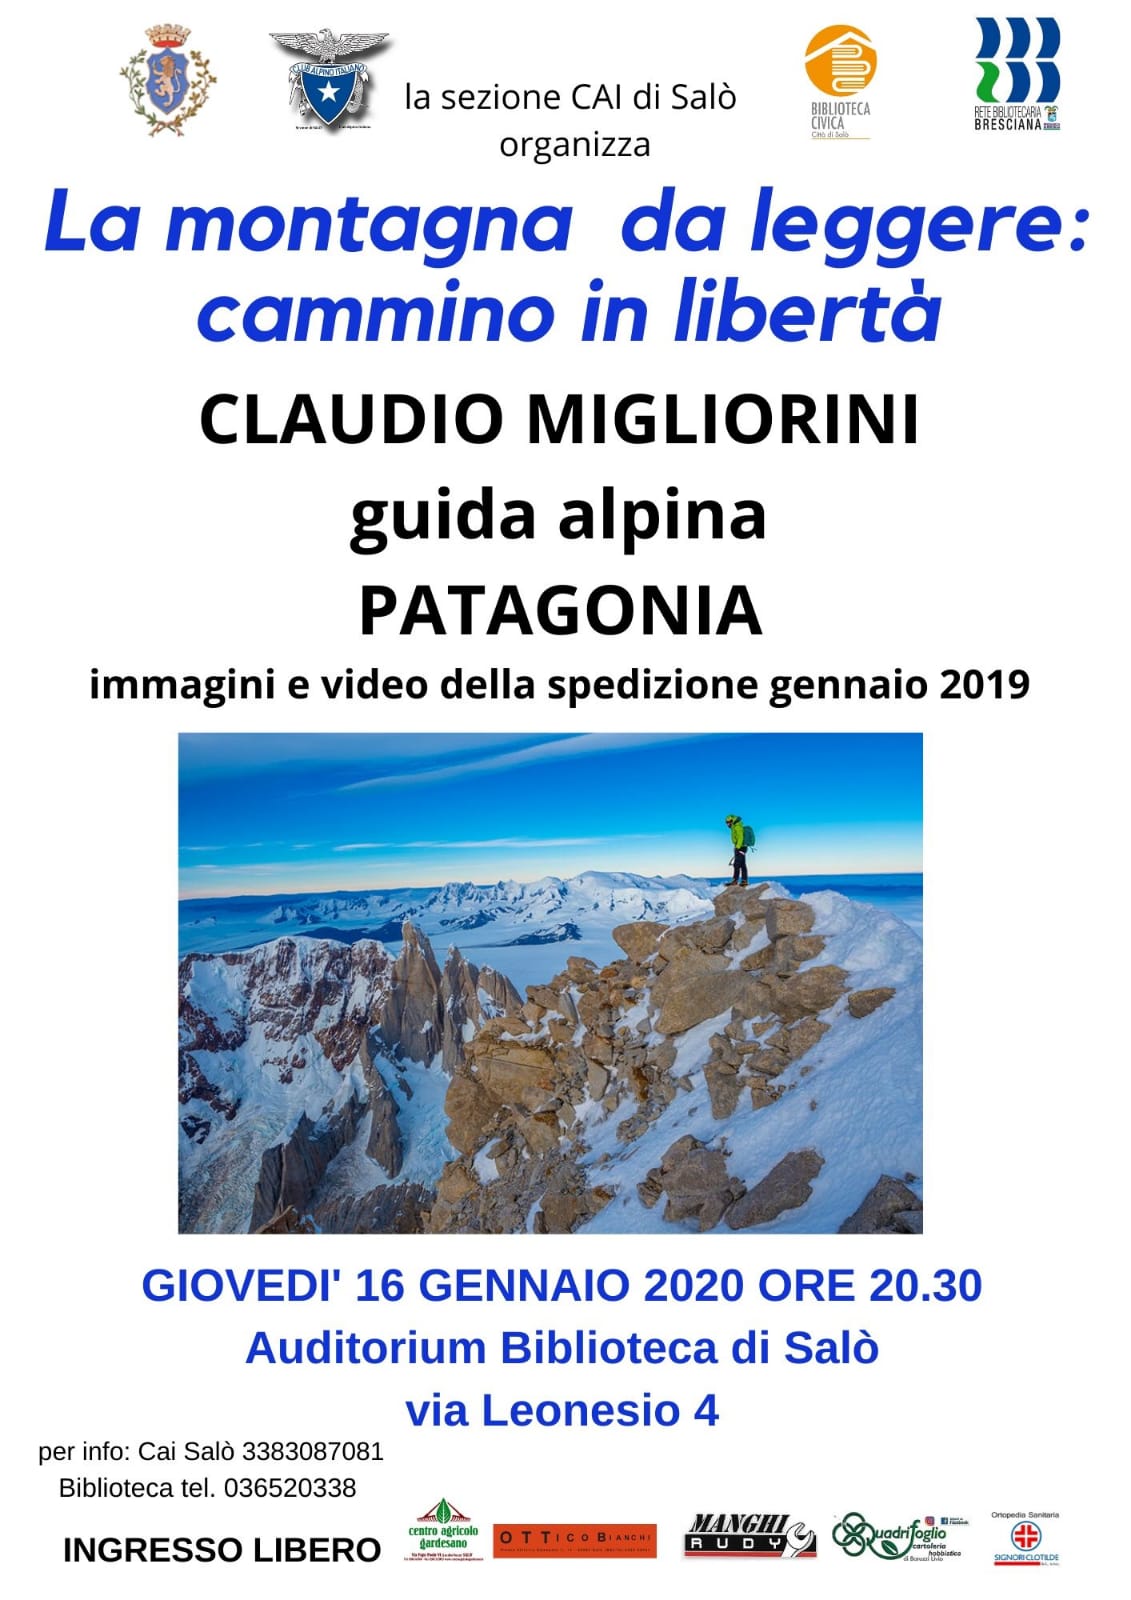 Giovedi’ 16 gennaio, la sezione CAI di Salò presenta la serata con Claudio Migliorini